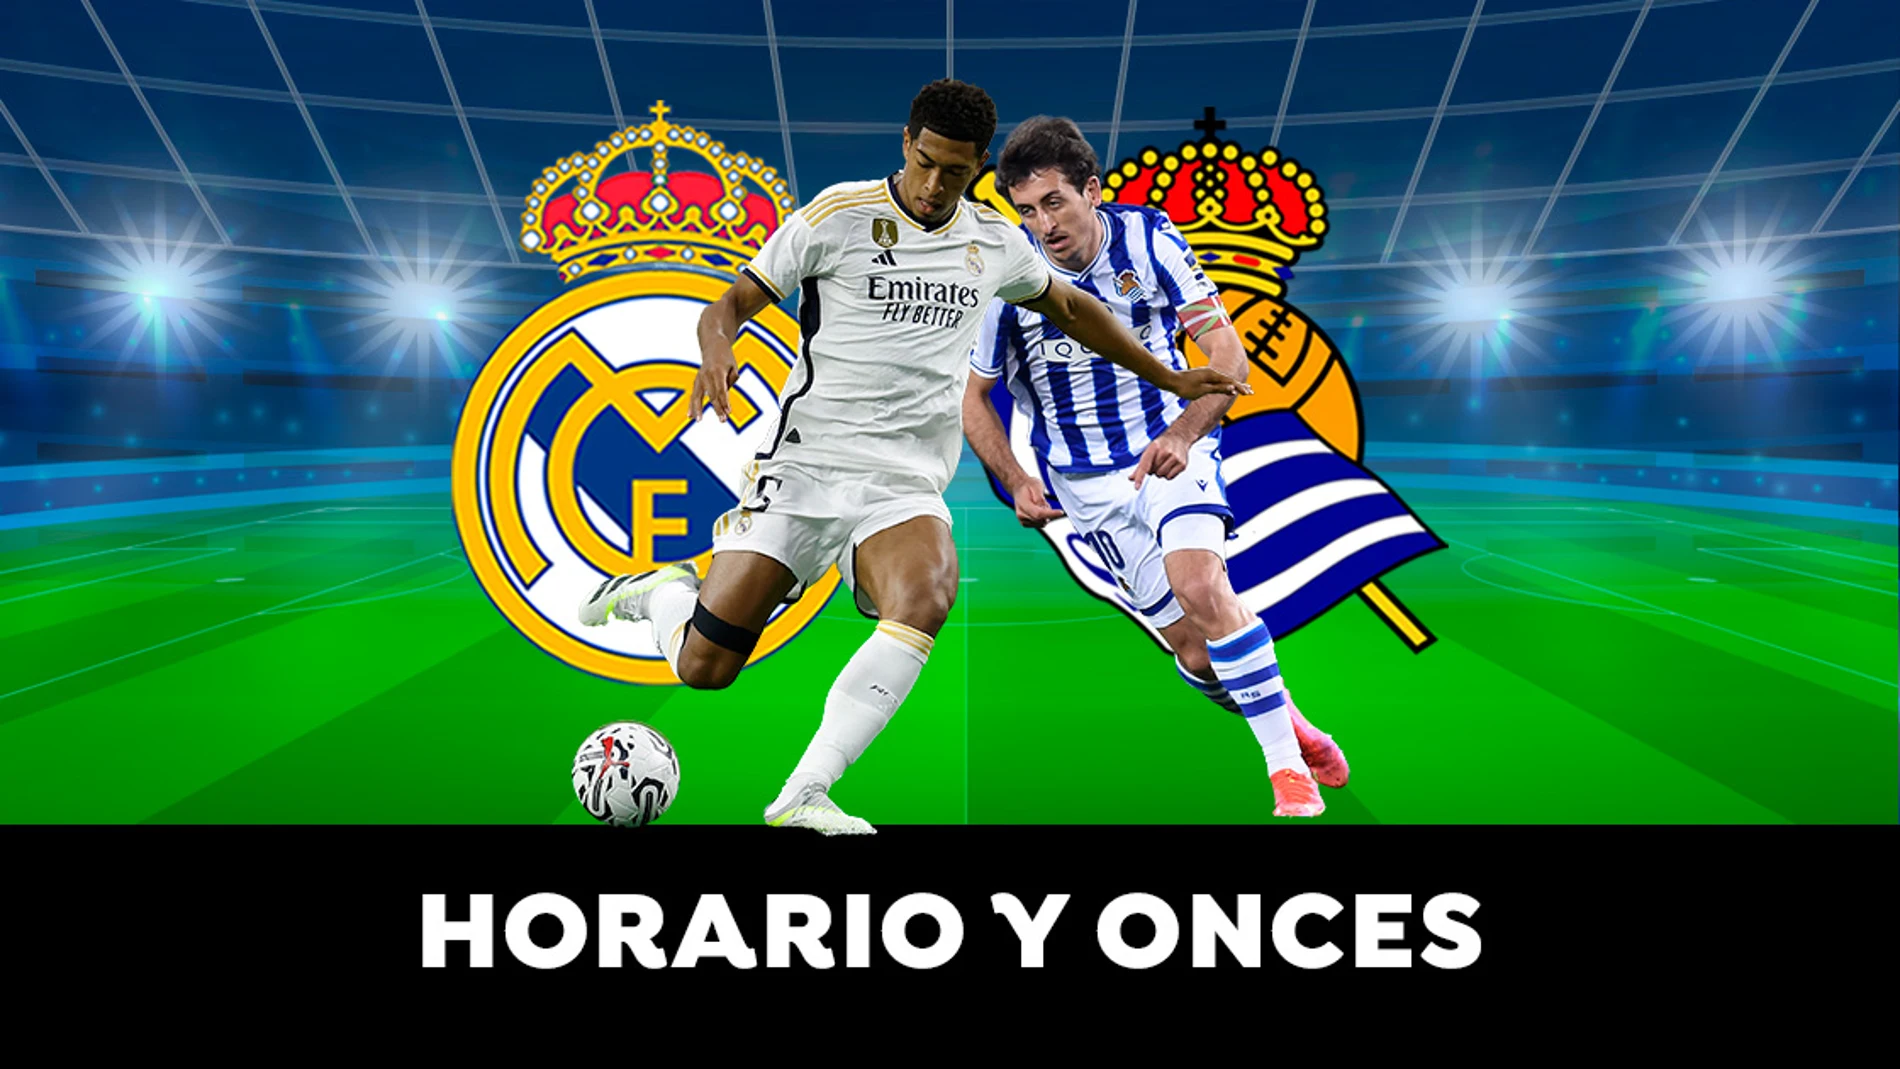 Real Madrid - Real Sociedad: Horario, alineaciones y dónde ver el